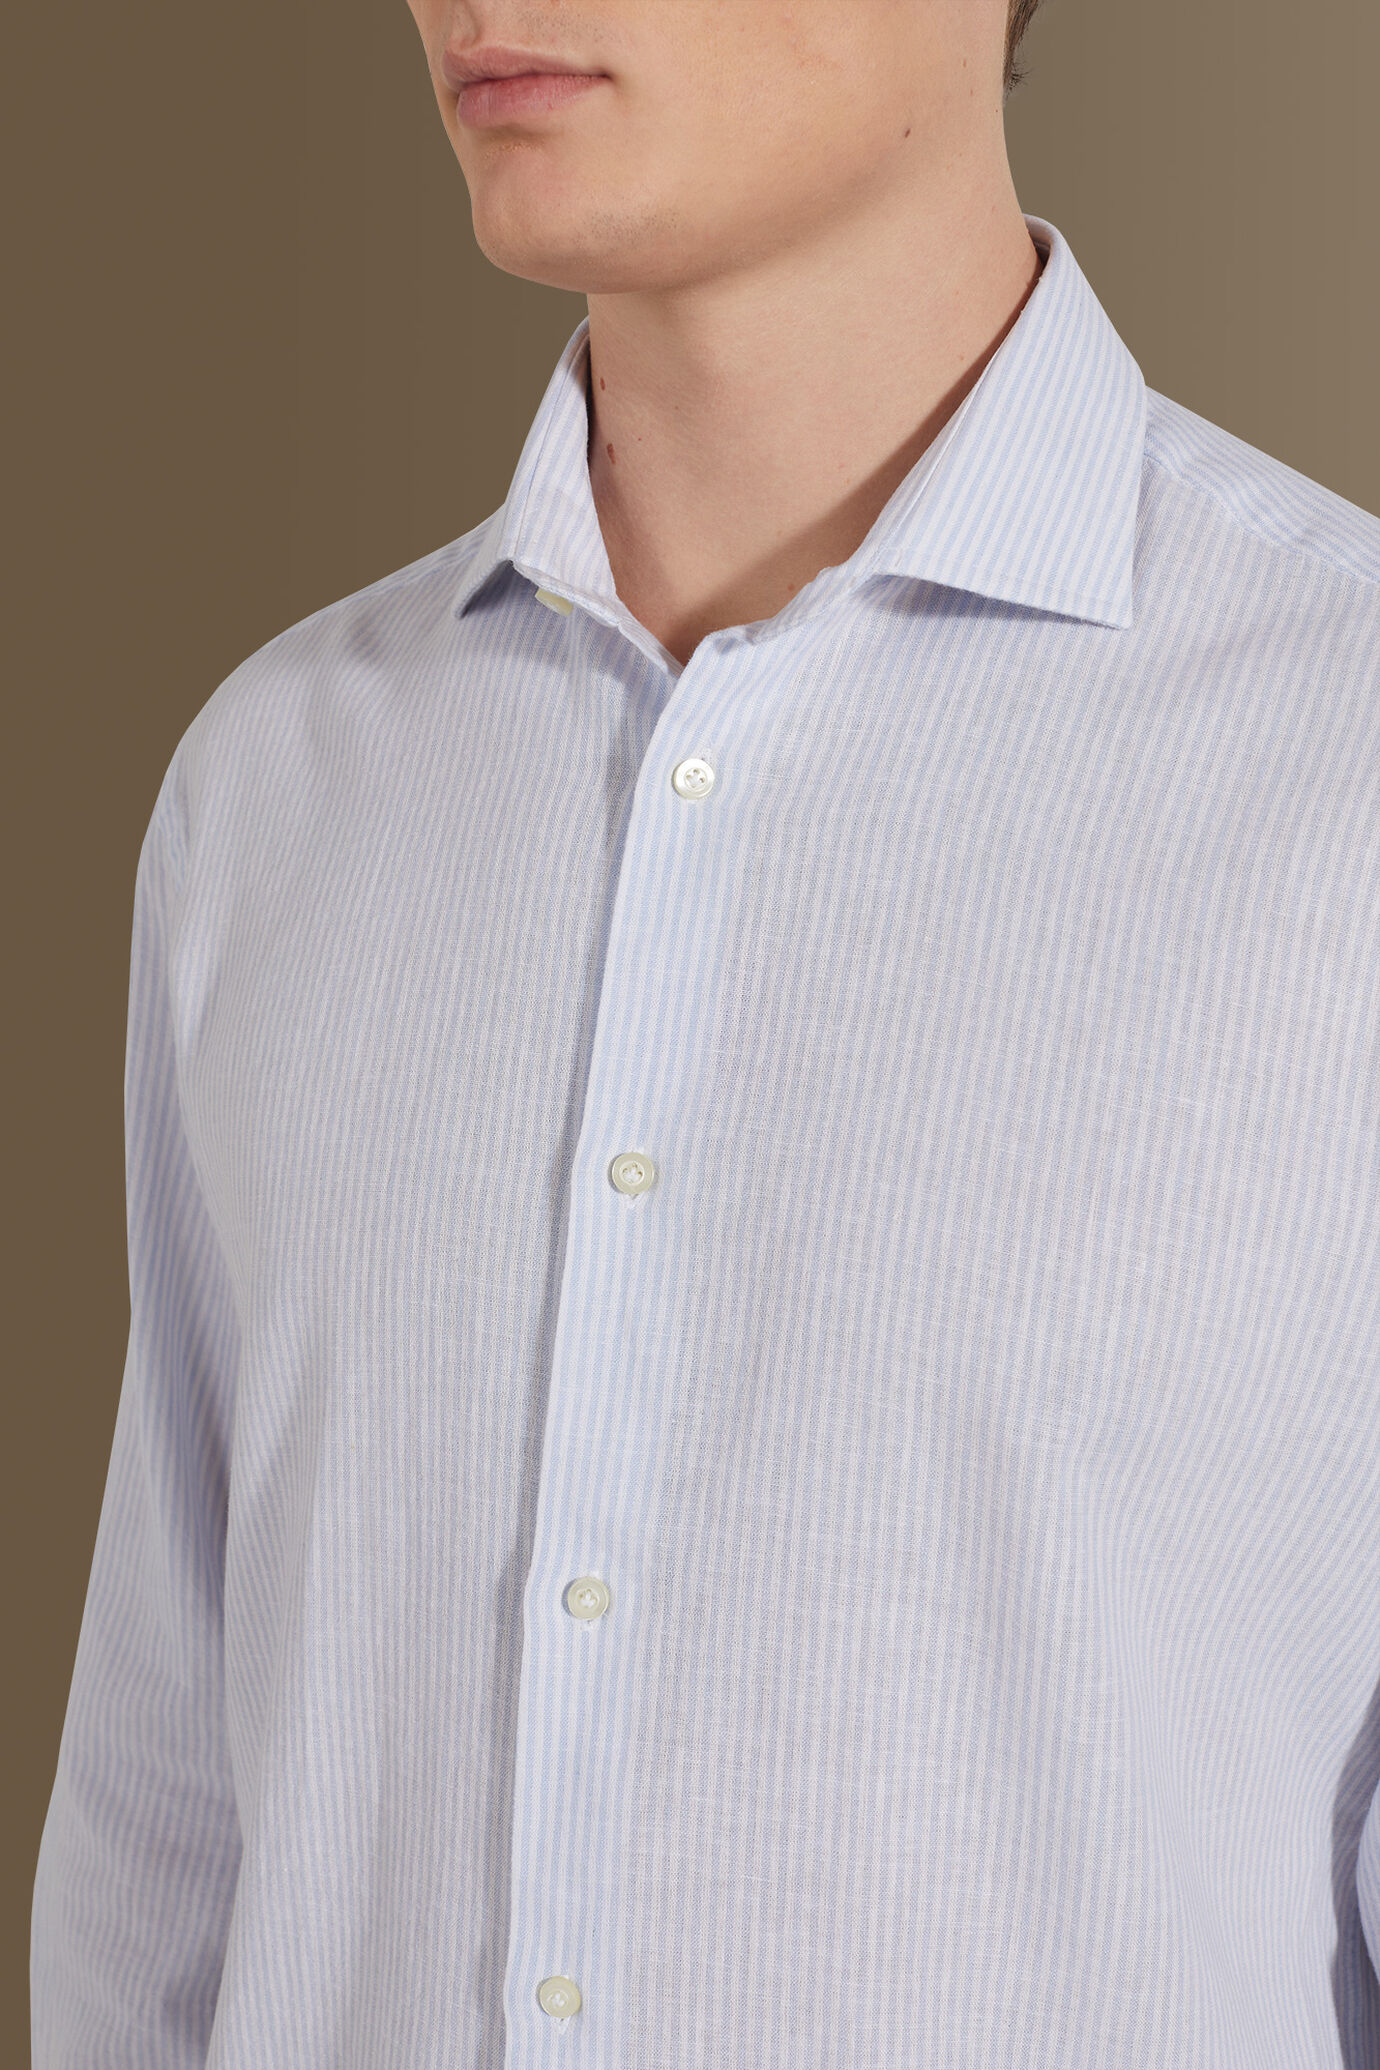 Camicia casual uomo collo francese misto lino a righe image number 1